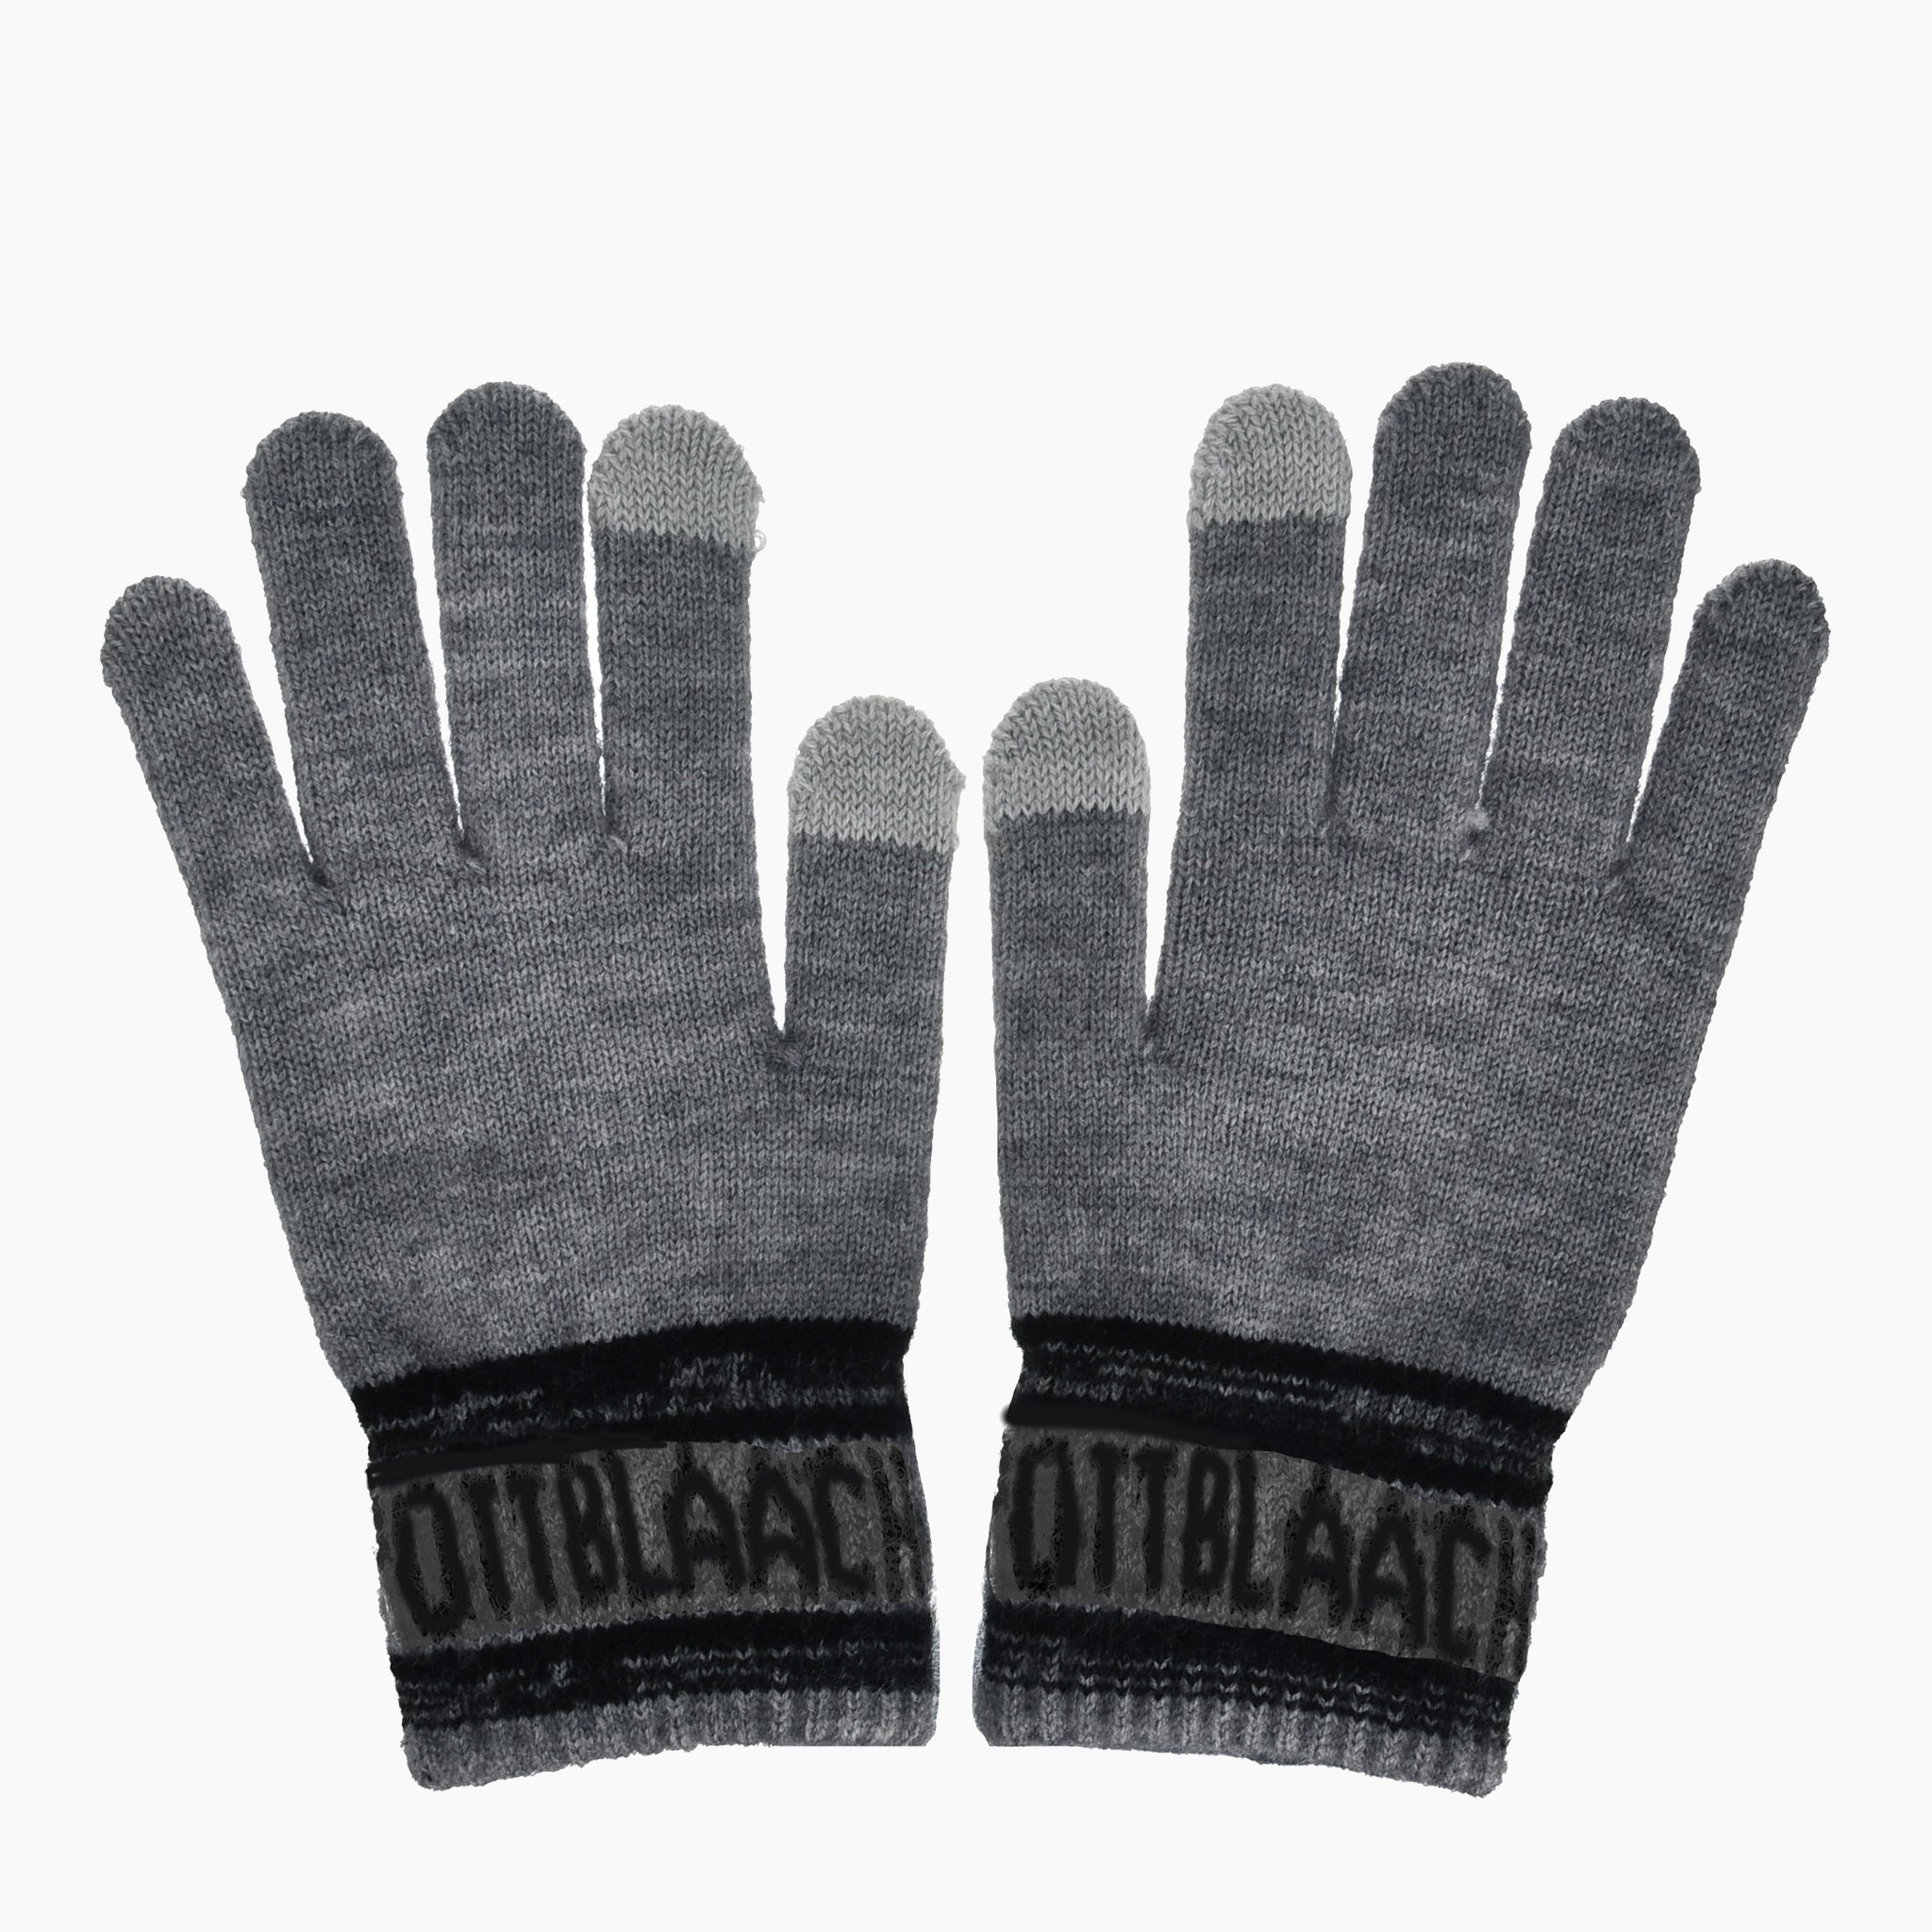 Ruhrpott Gloves - Robin Ruth